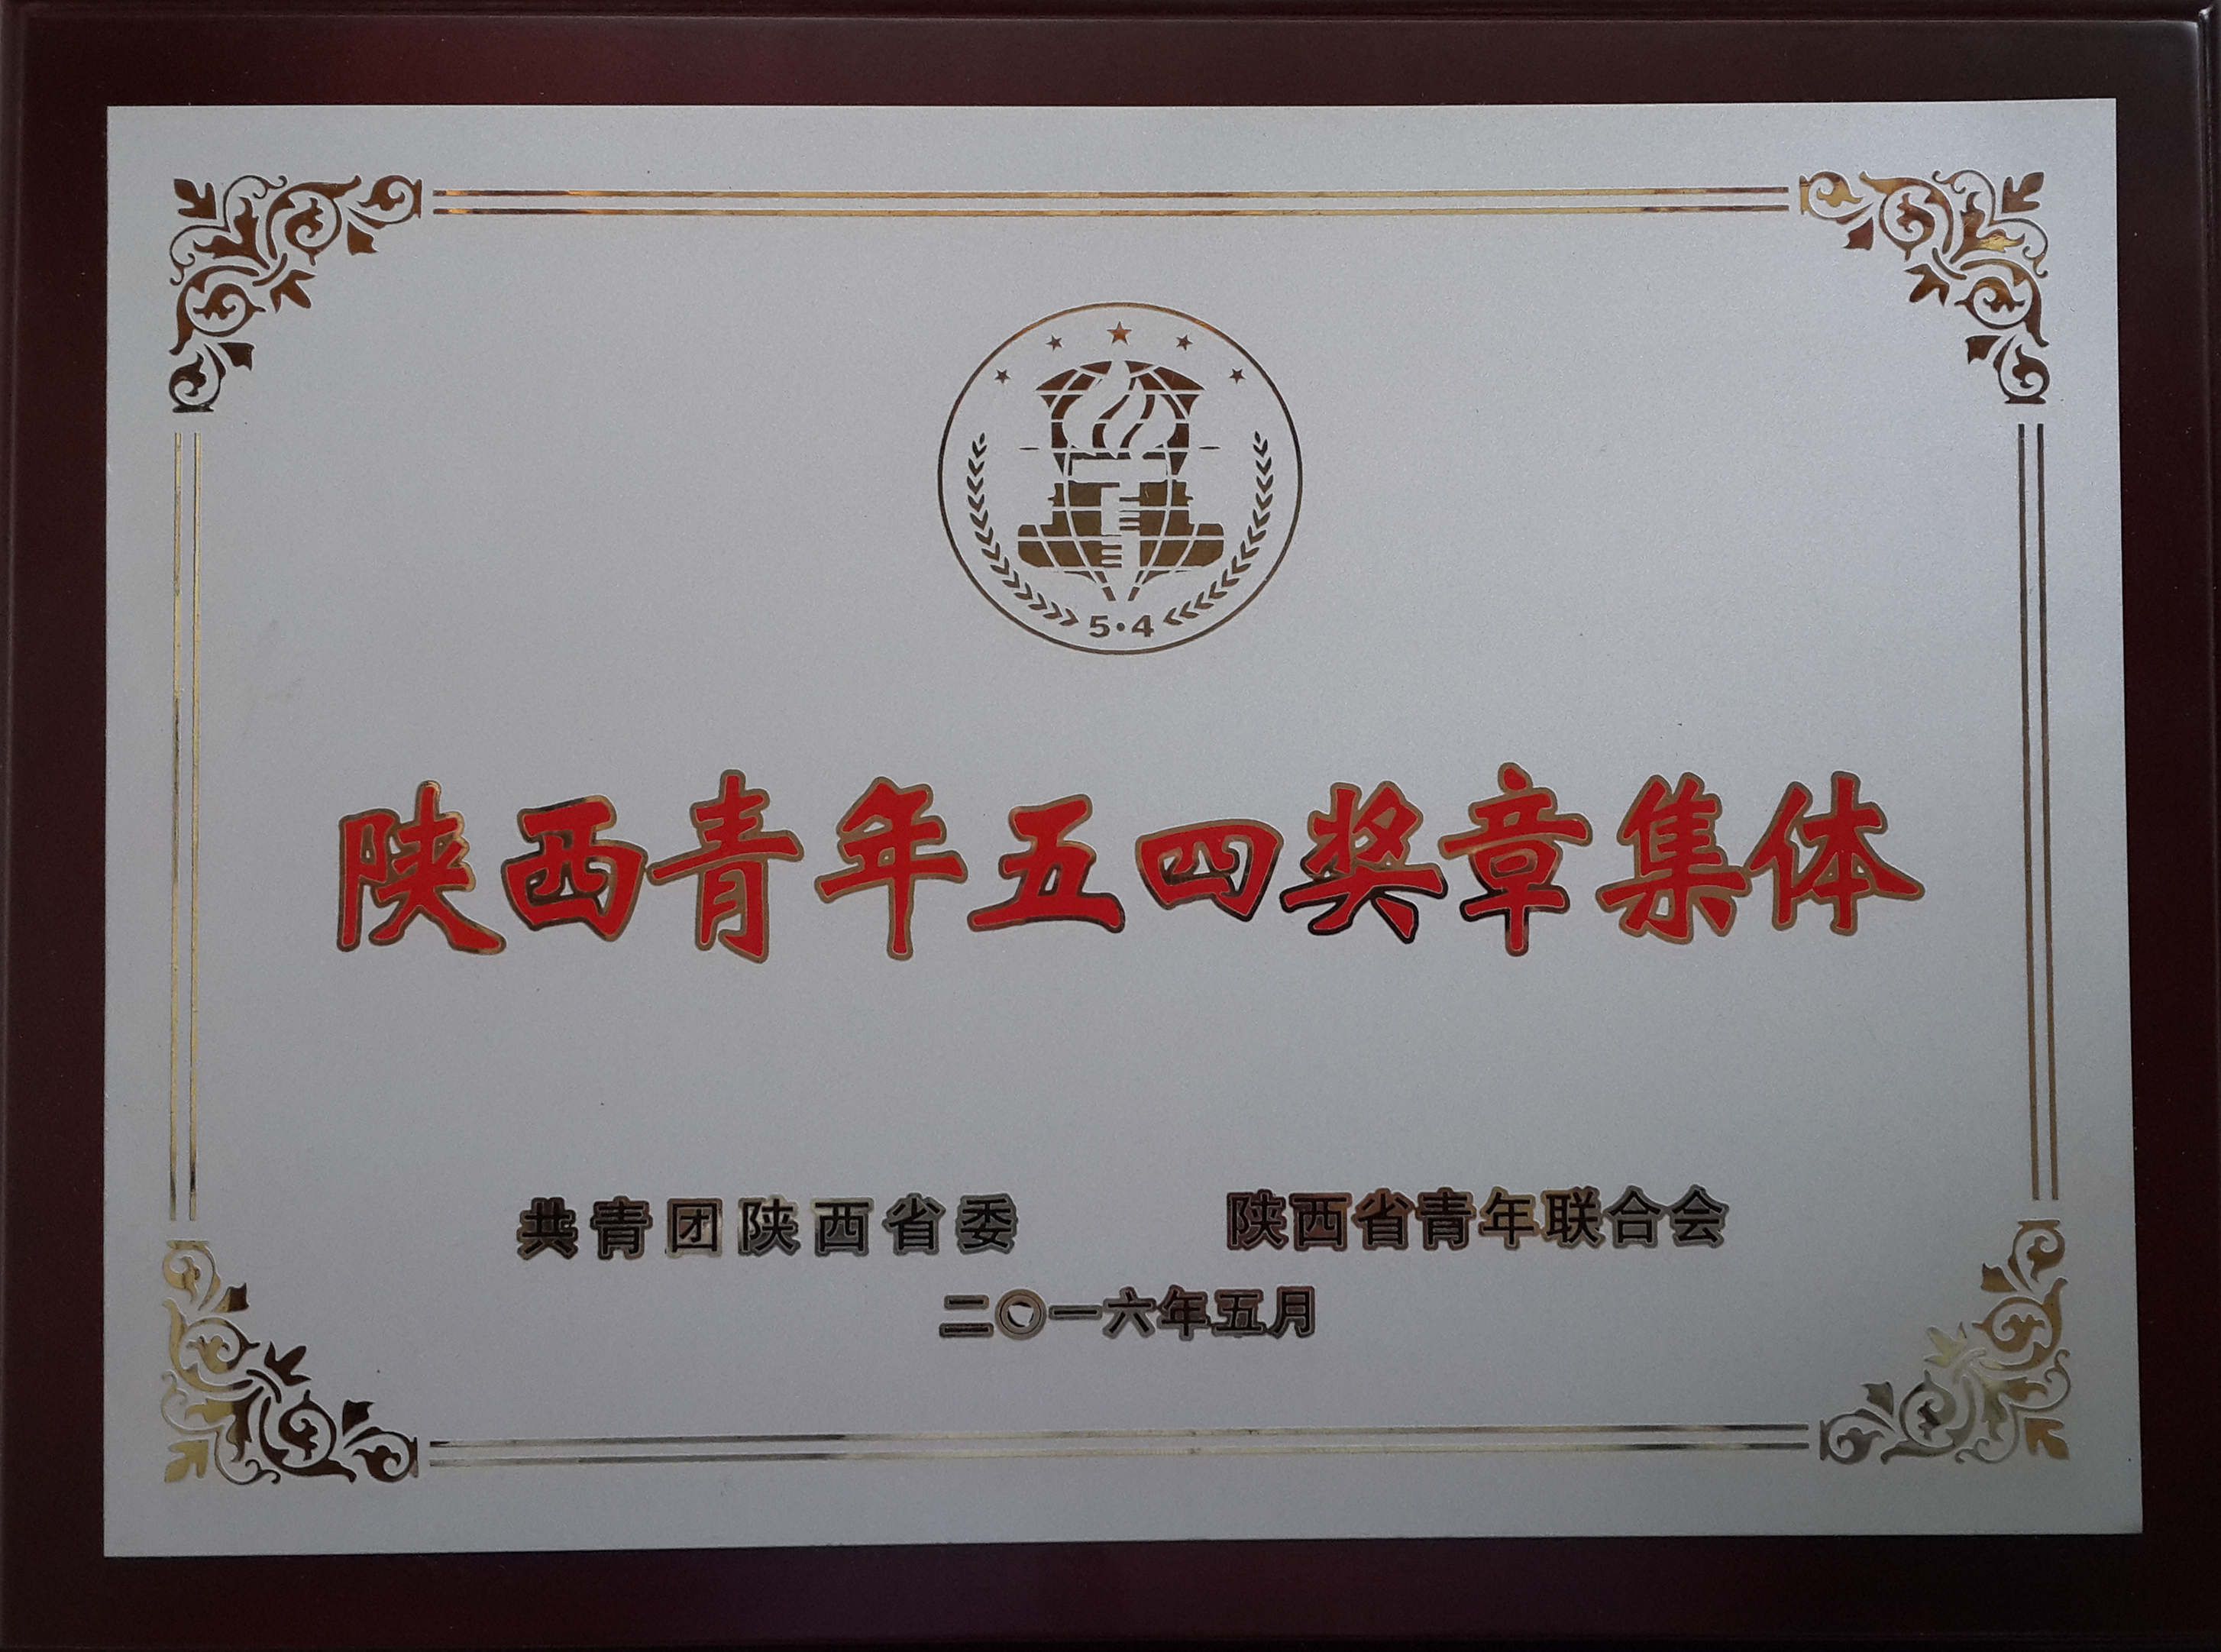 我校早期生命演化创新研究团队荣获“陕西五四青年集体奖章”